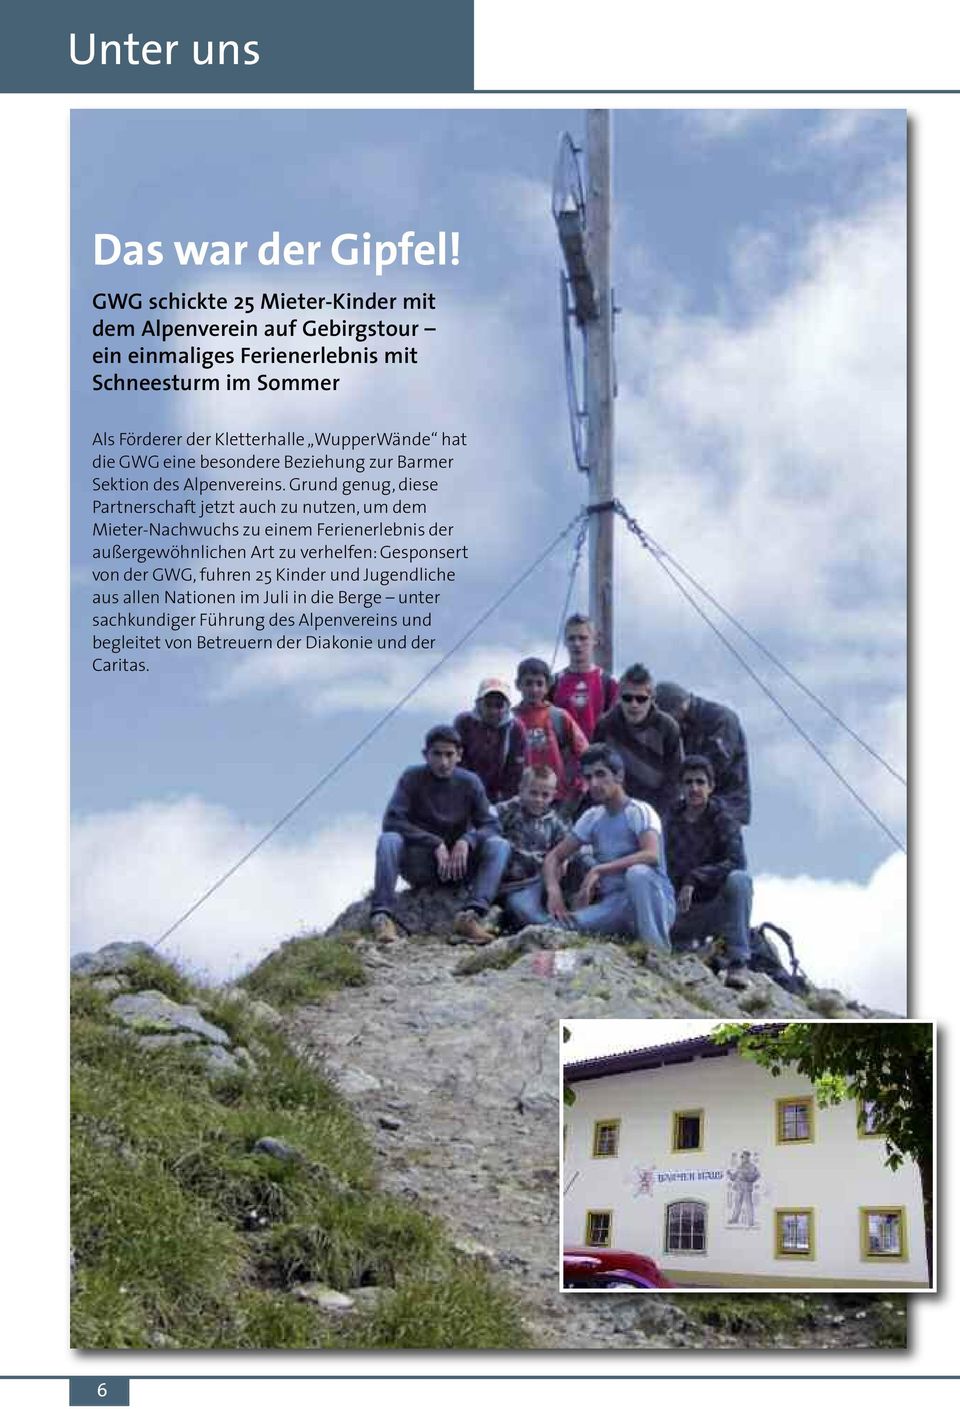 WupperWände hat die GWG eine besondere Beziehung zur Barmer Sektion des Alpenvereins.